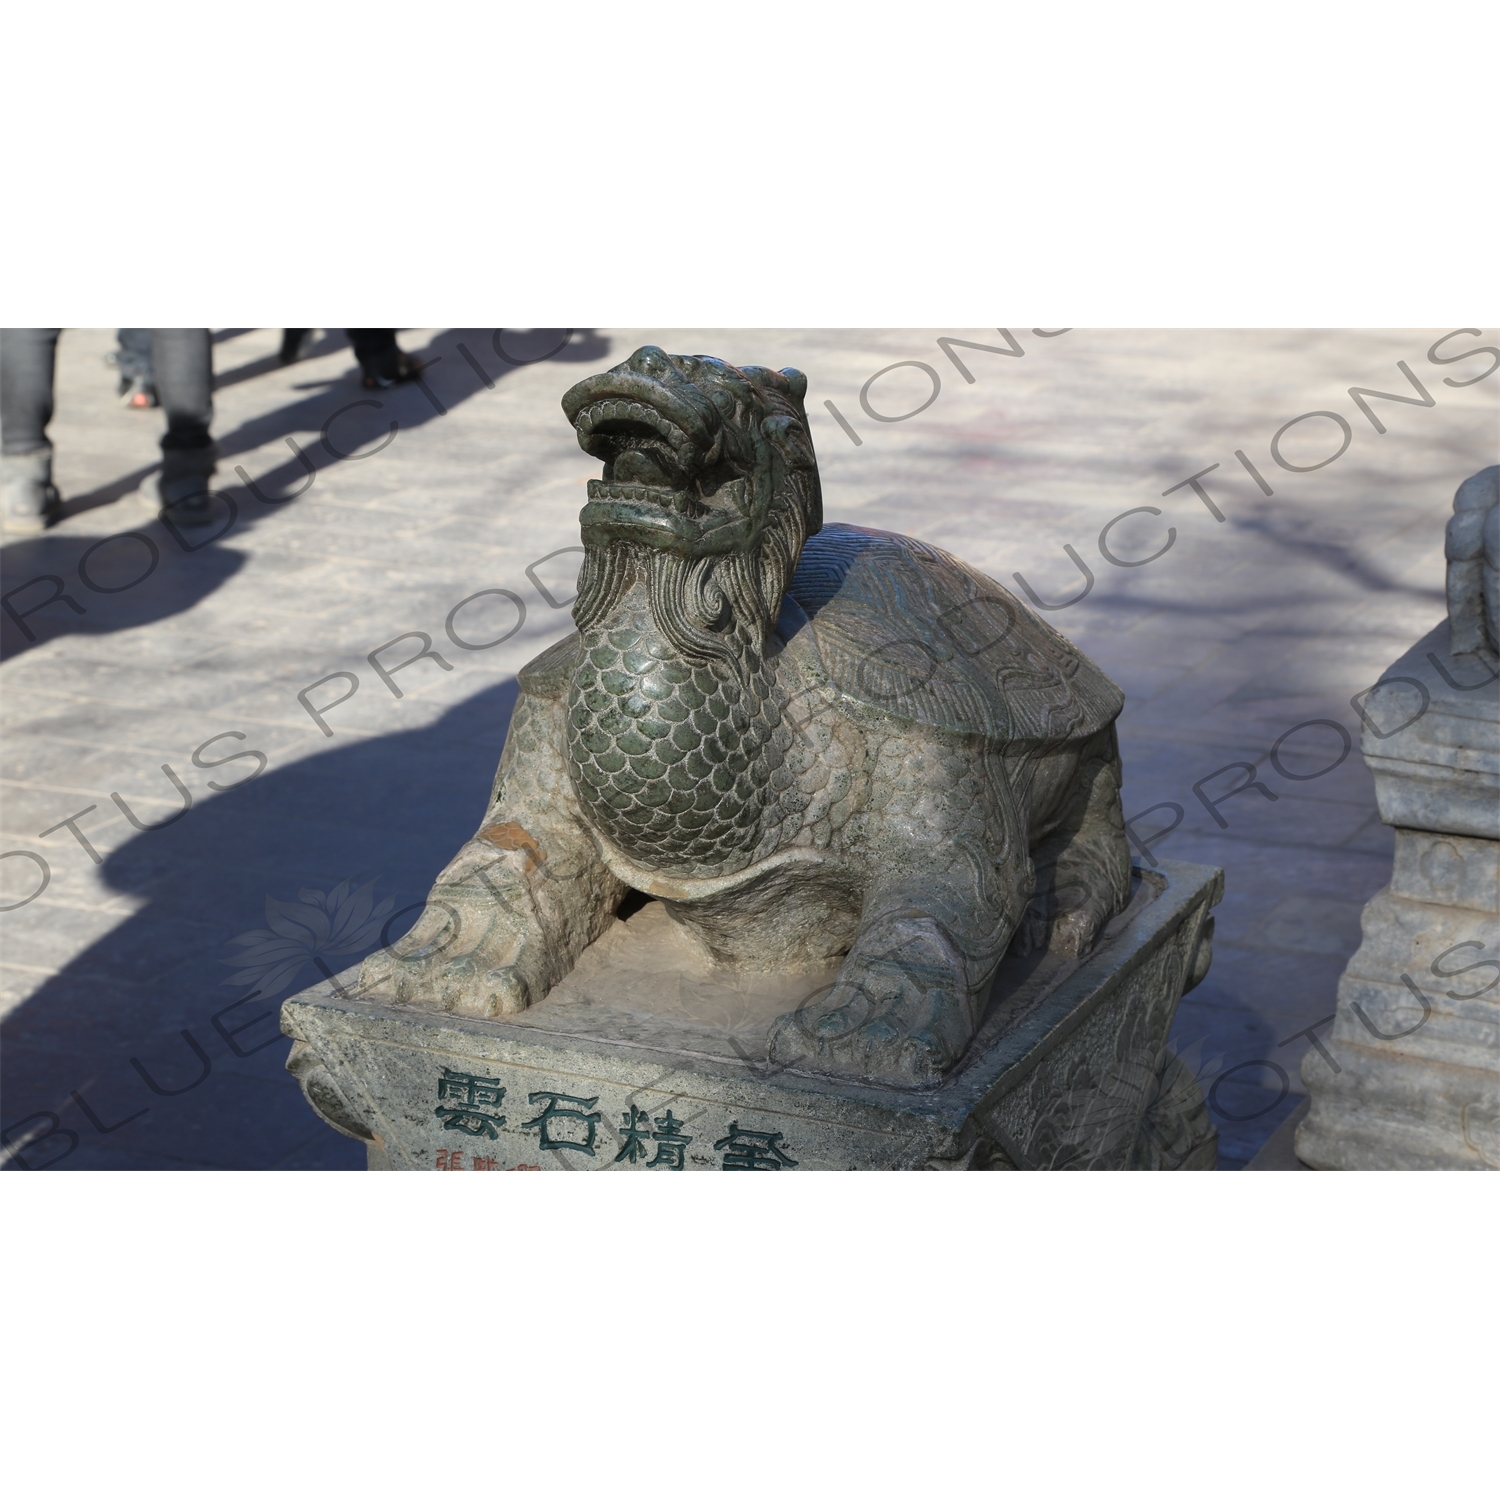 Dragon Turtle (Longgui) Statue in the Lama Temple in Beijing